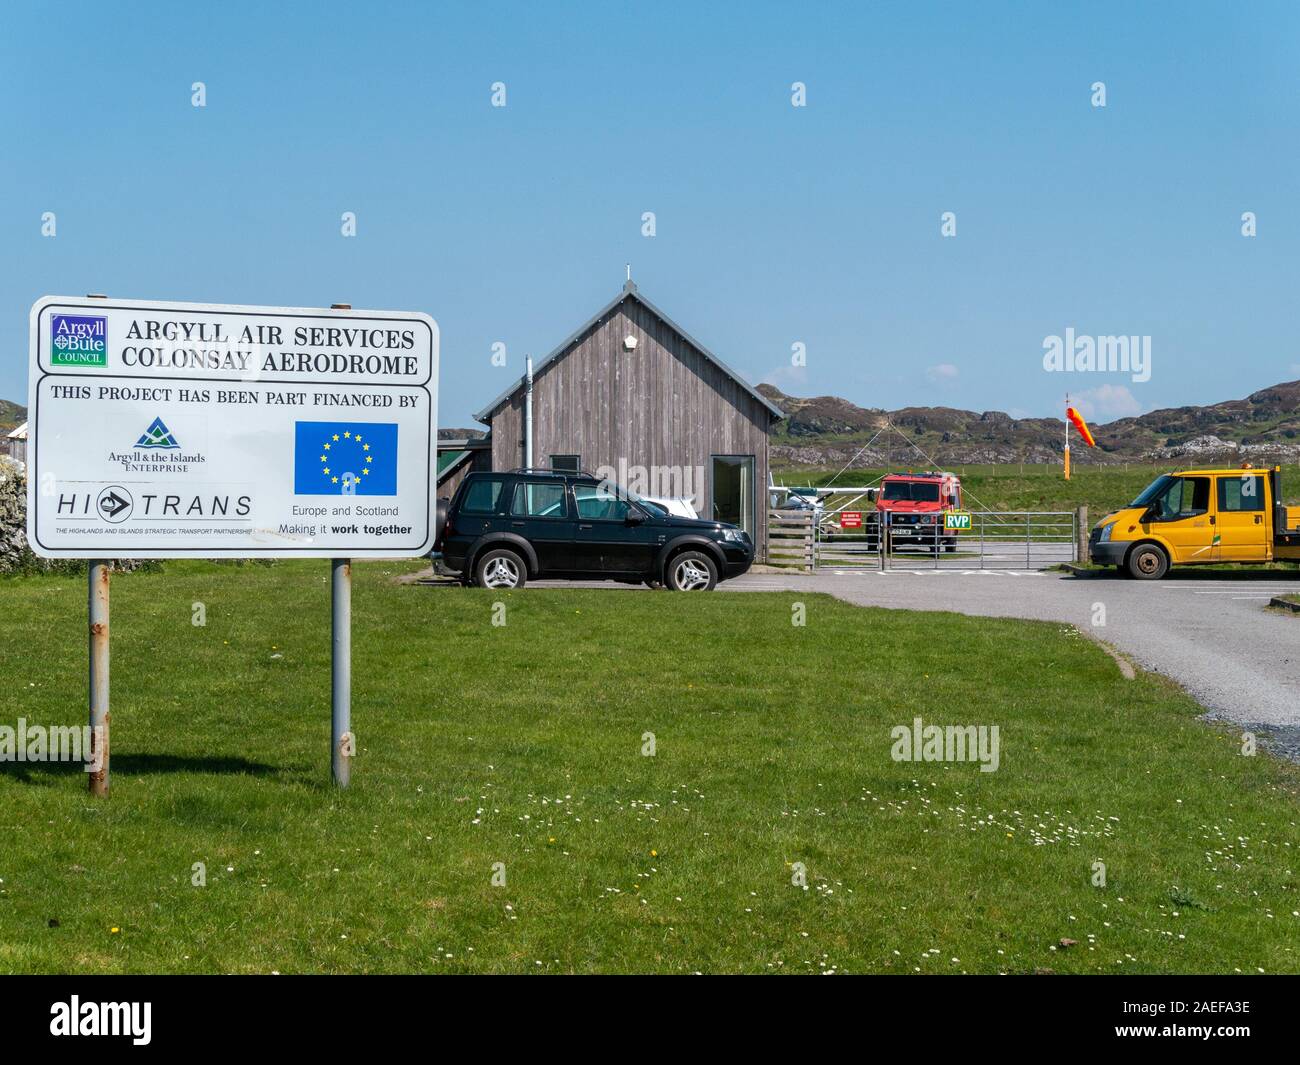 Petit aérodrome de Colonsay, Argyll Air Services, à l'île de Colonsay, Hébrides intérieures, Argyll and Bute, Ecosse, Royaume-Uni. Banque D'Images